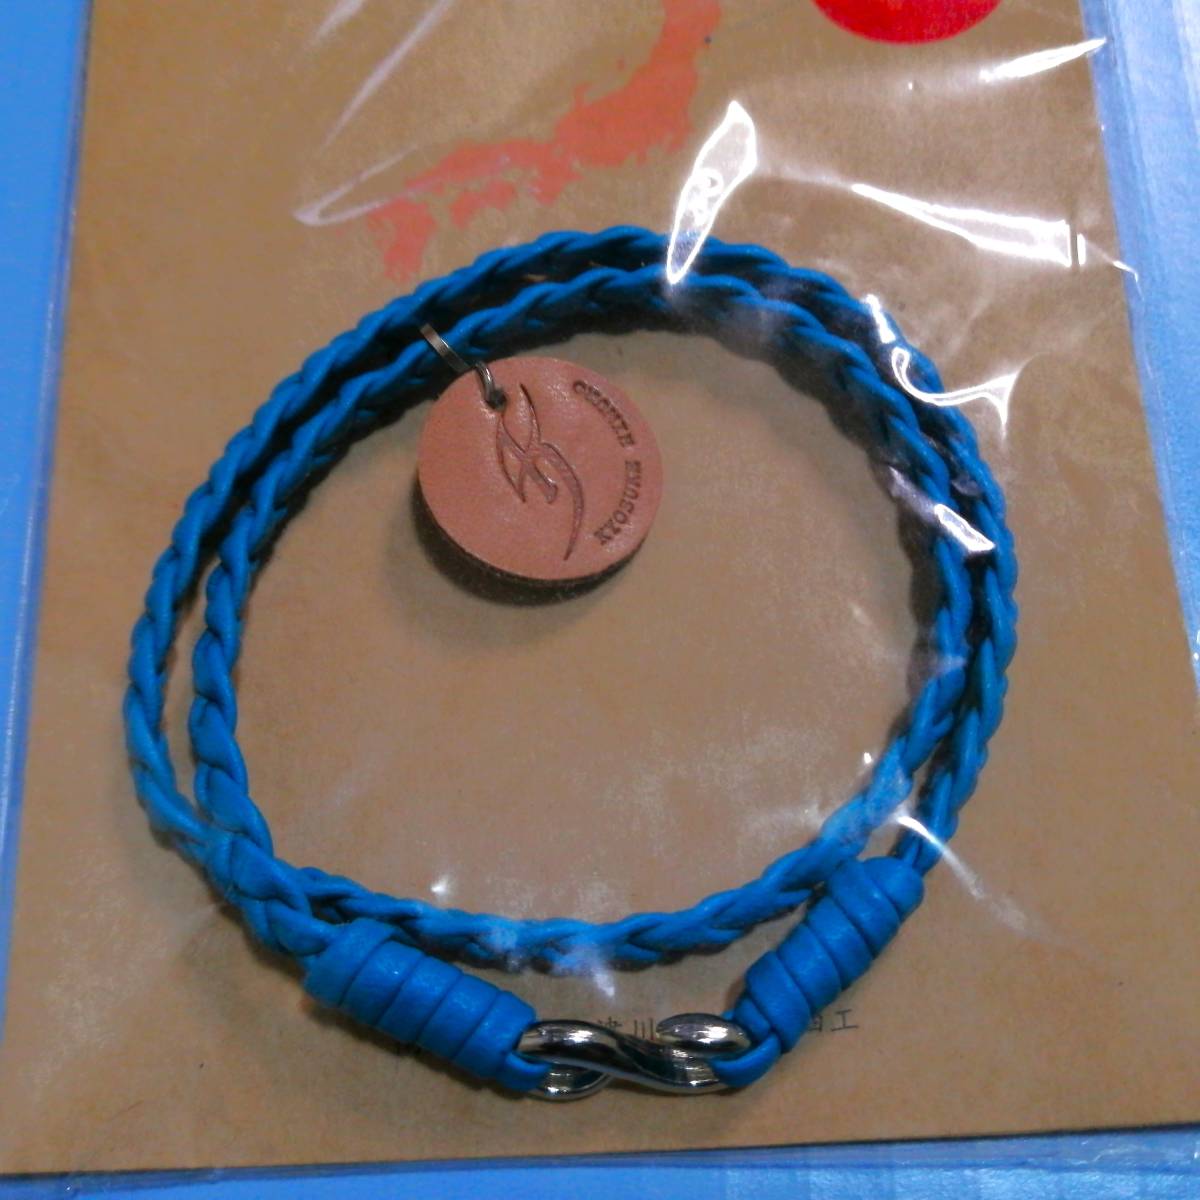  нераспечатанный Himuro Kyosuke H⑩ 2 полосный браслет голубой SHIZU кожа новый товар товары boowy. Цу река 